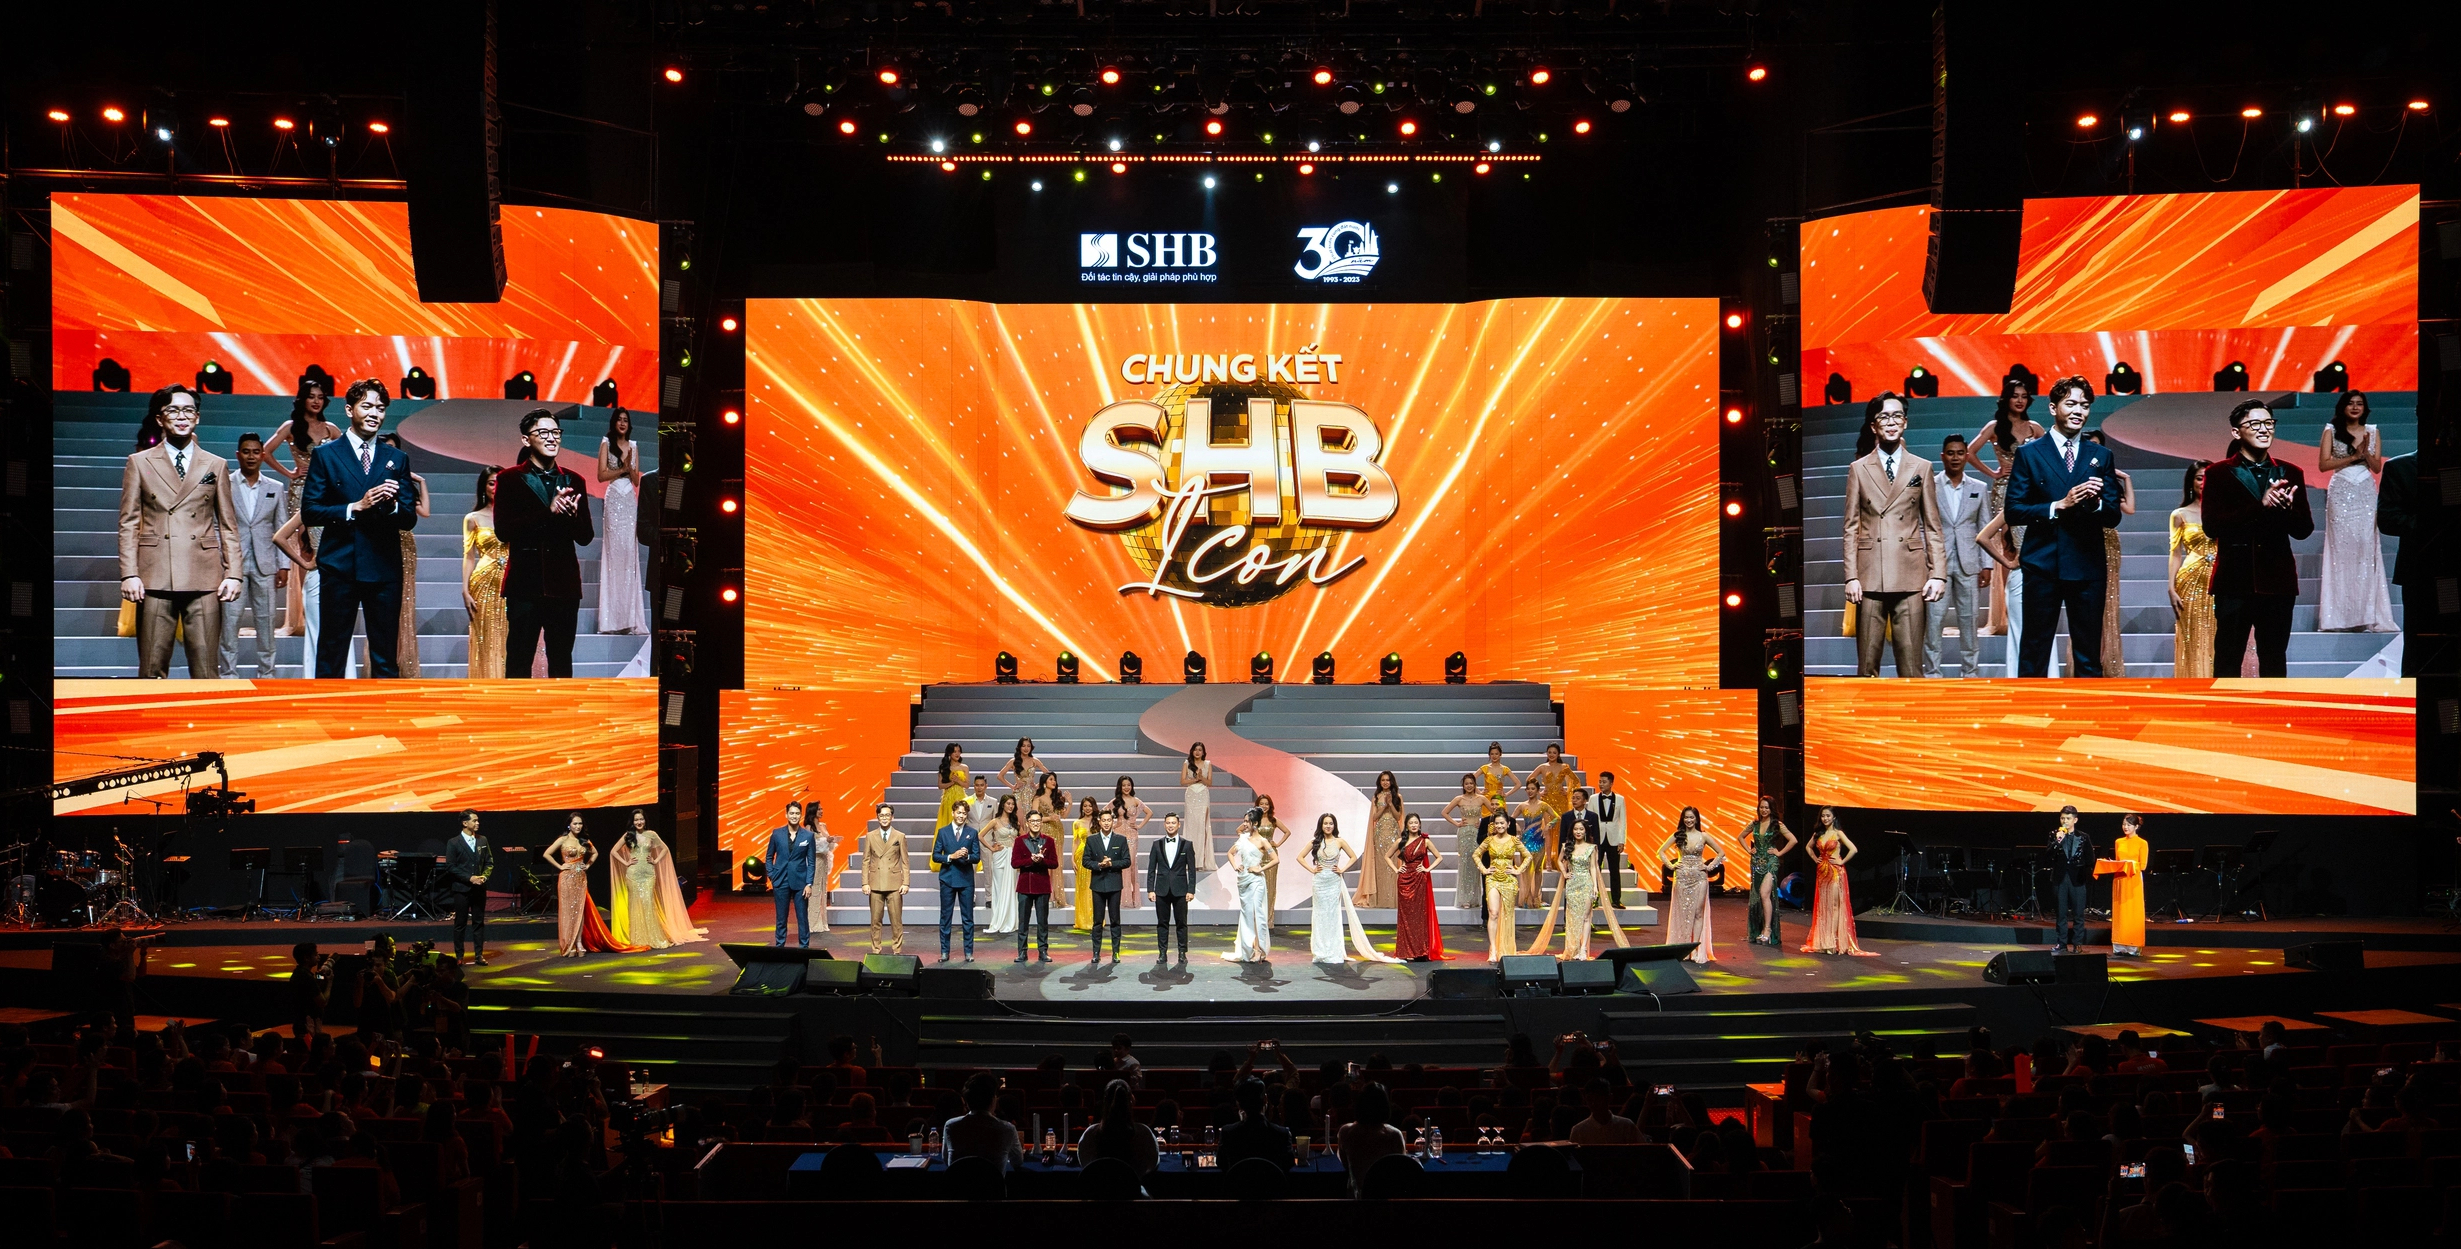 Phó chủ tịch Đỗ Quang Vinh: SHB tạo sự khác biệt từ lối đi riêng- Ảnh 10.